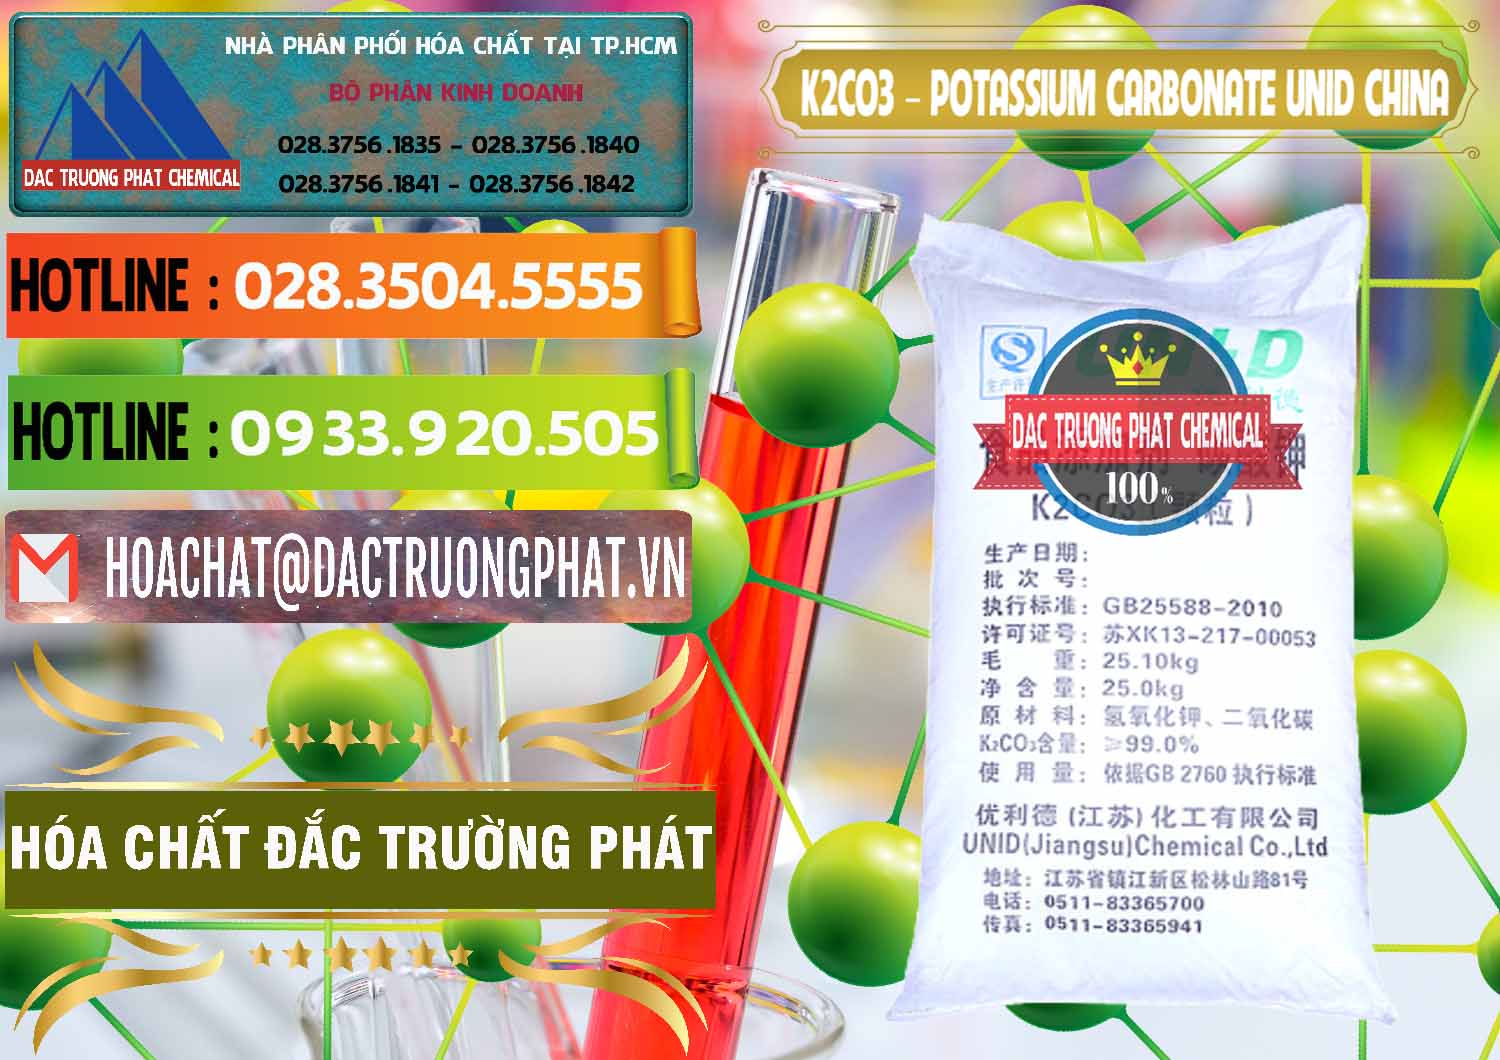 Đơn vị kinh doanh ( bán ) K2Co3 – Potassium Carbonate UNID Trung Quốc China - 0475 - Đơn vị kinh doanh - phân phối hóa chất tại TP.HCM - cungcaphoachat.com.vn